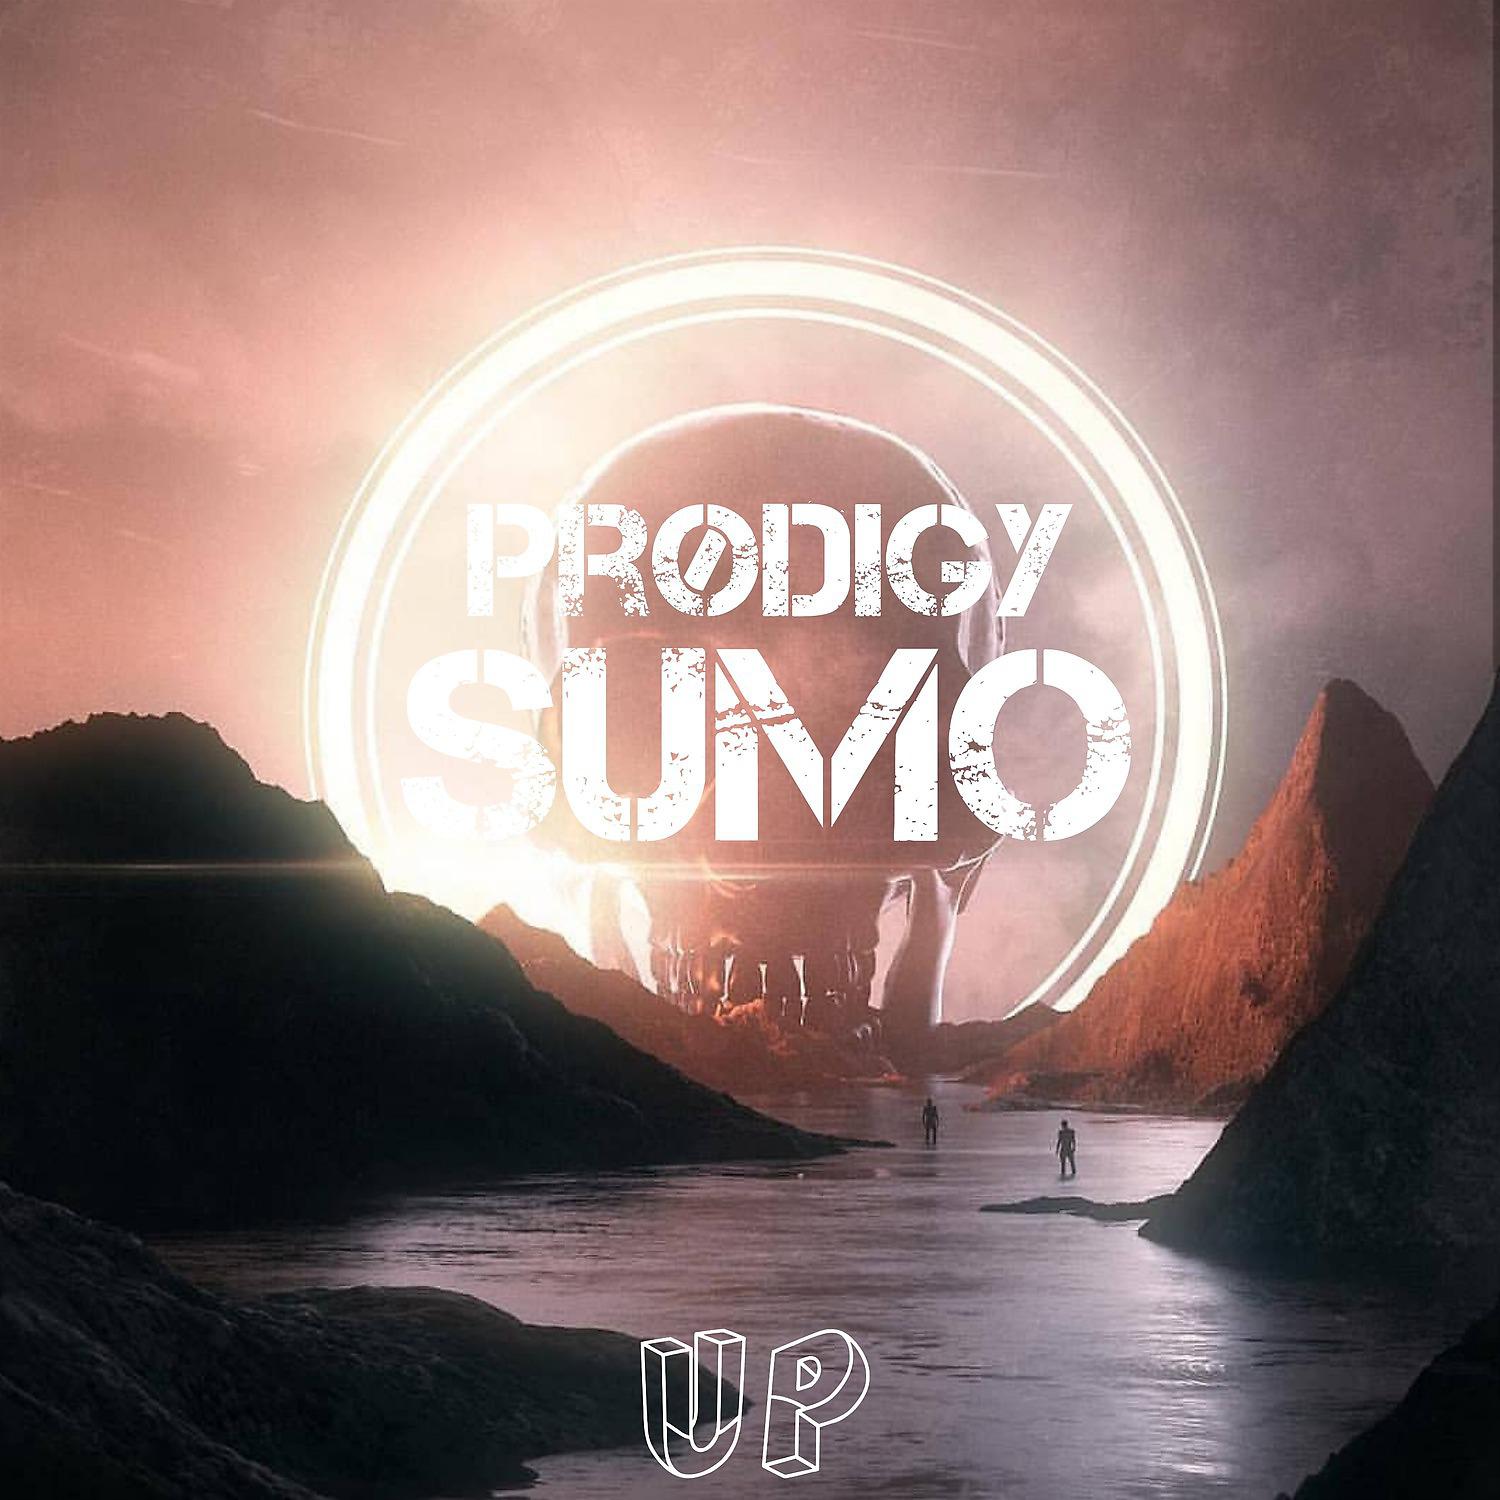 Постер альбома Sumo